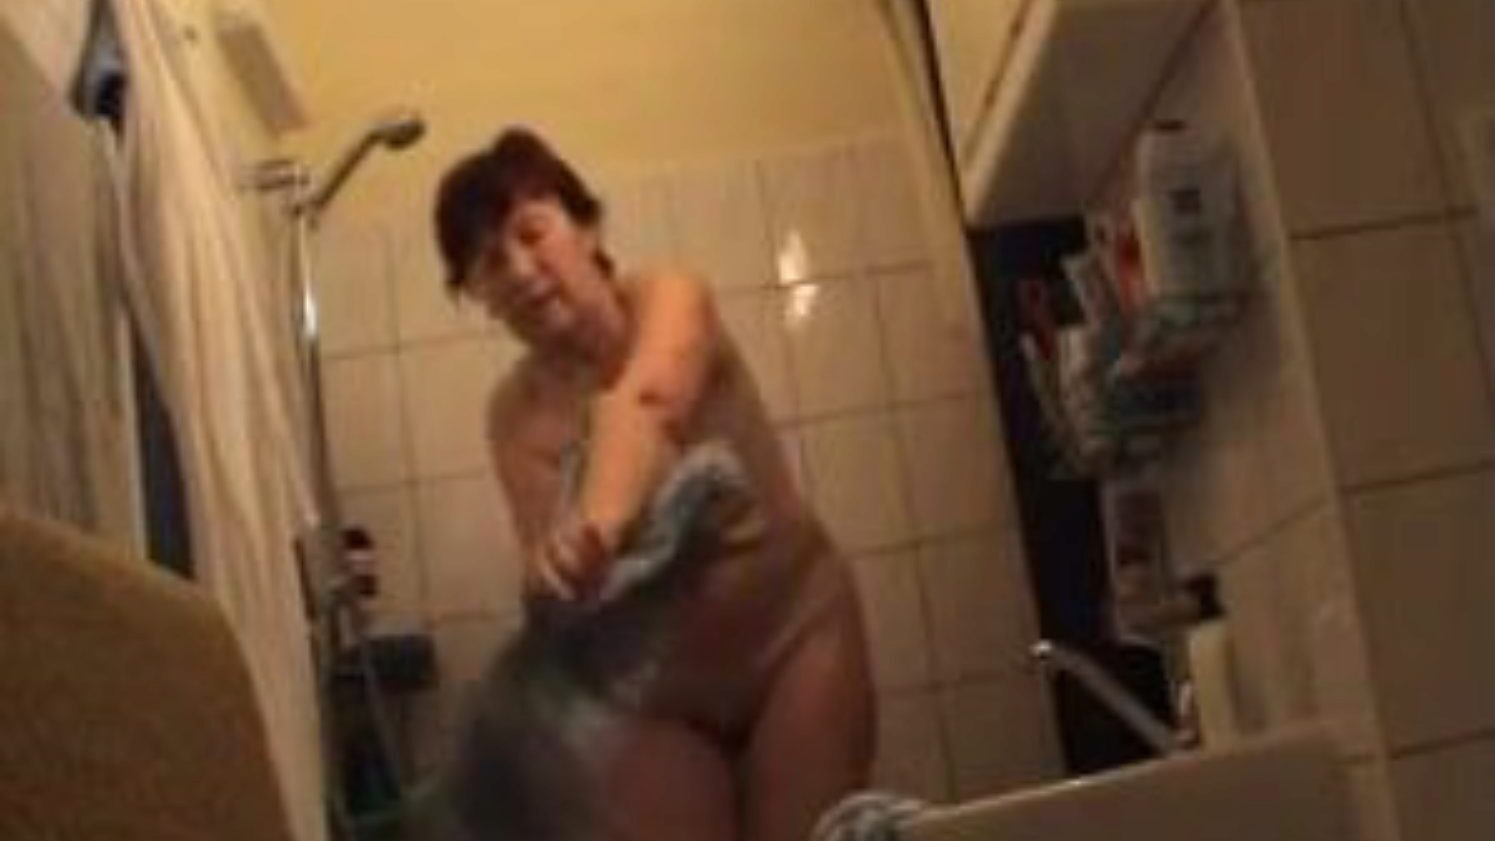 německá babička nahá v koupelně, německé porno video zdarma sledovat německá babička nahá v koupelně filmová scéna na xhamsteru, největší stránka sex tube s hromadou volných Němců nahá babička a zralá porno videa